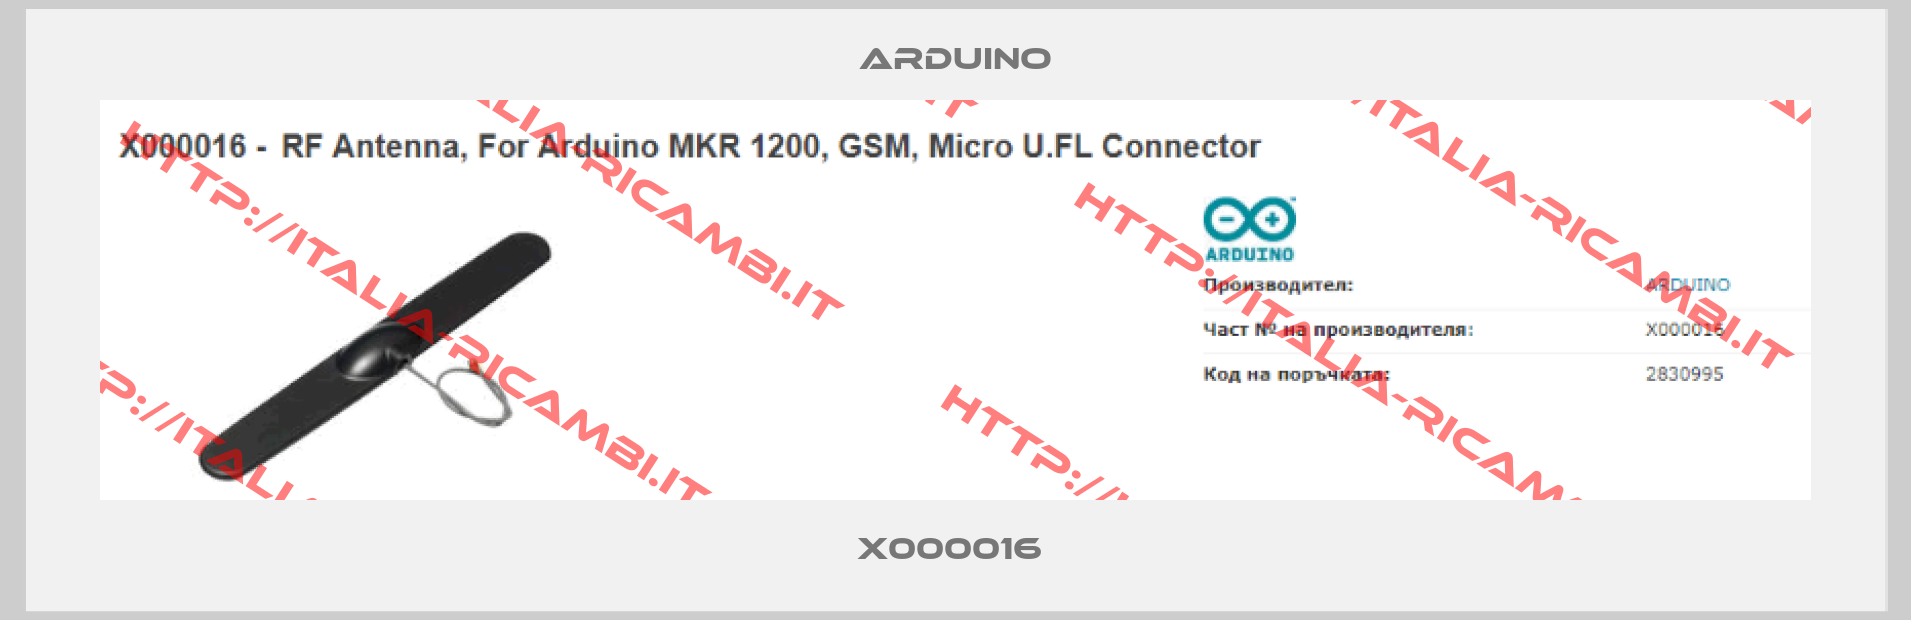 Arduino-X000016 